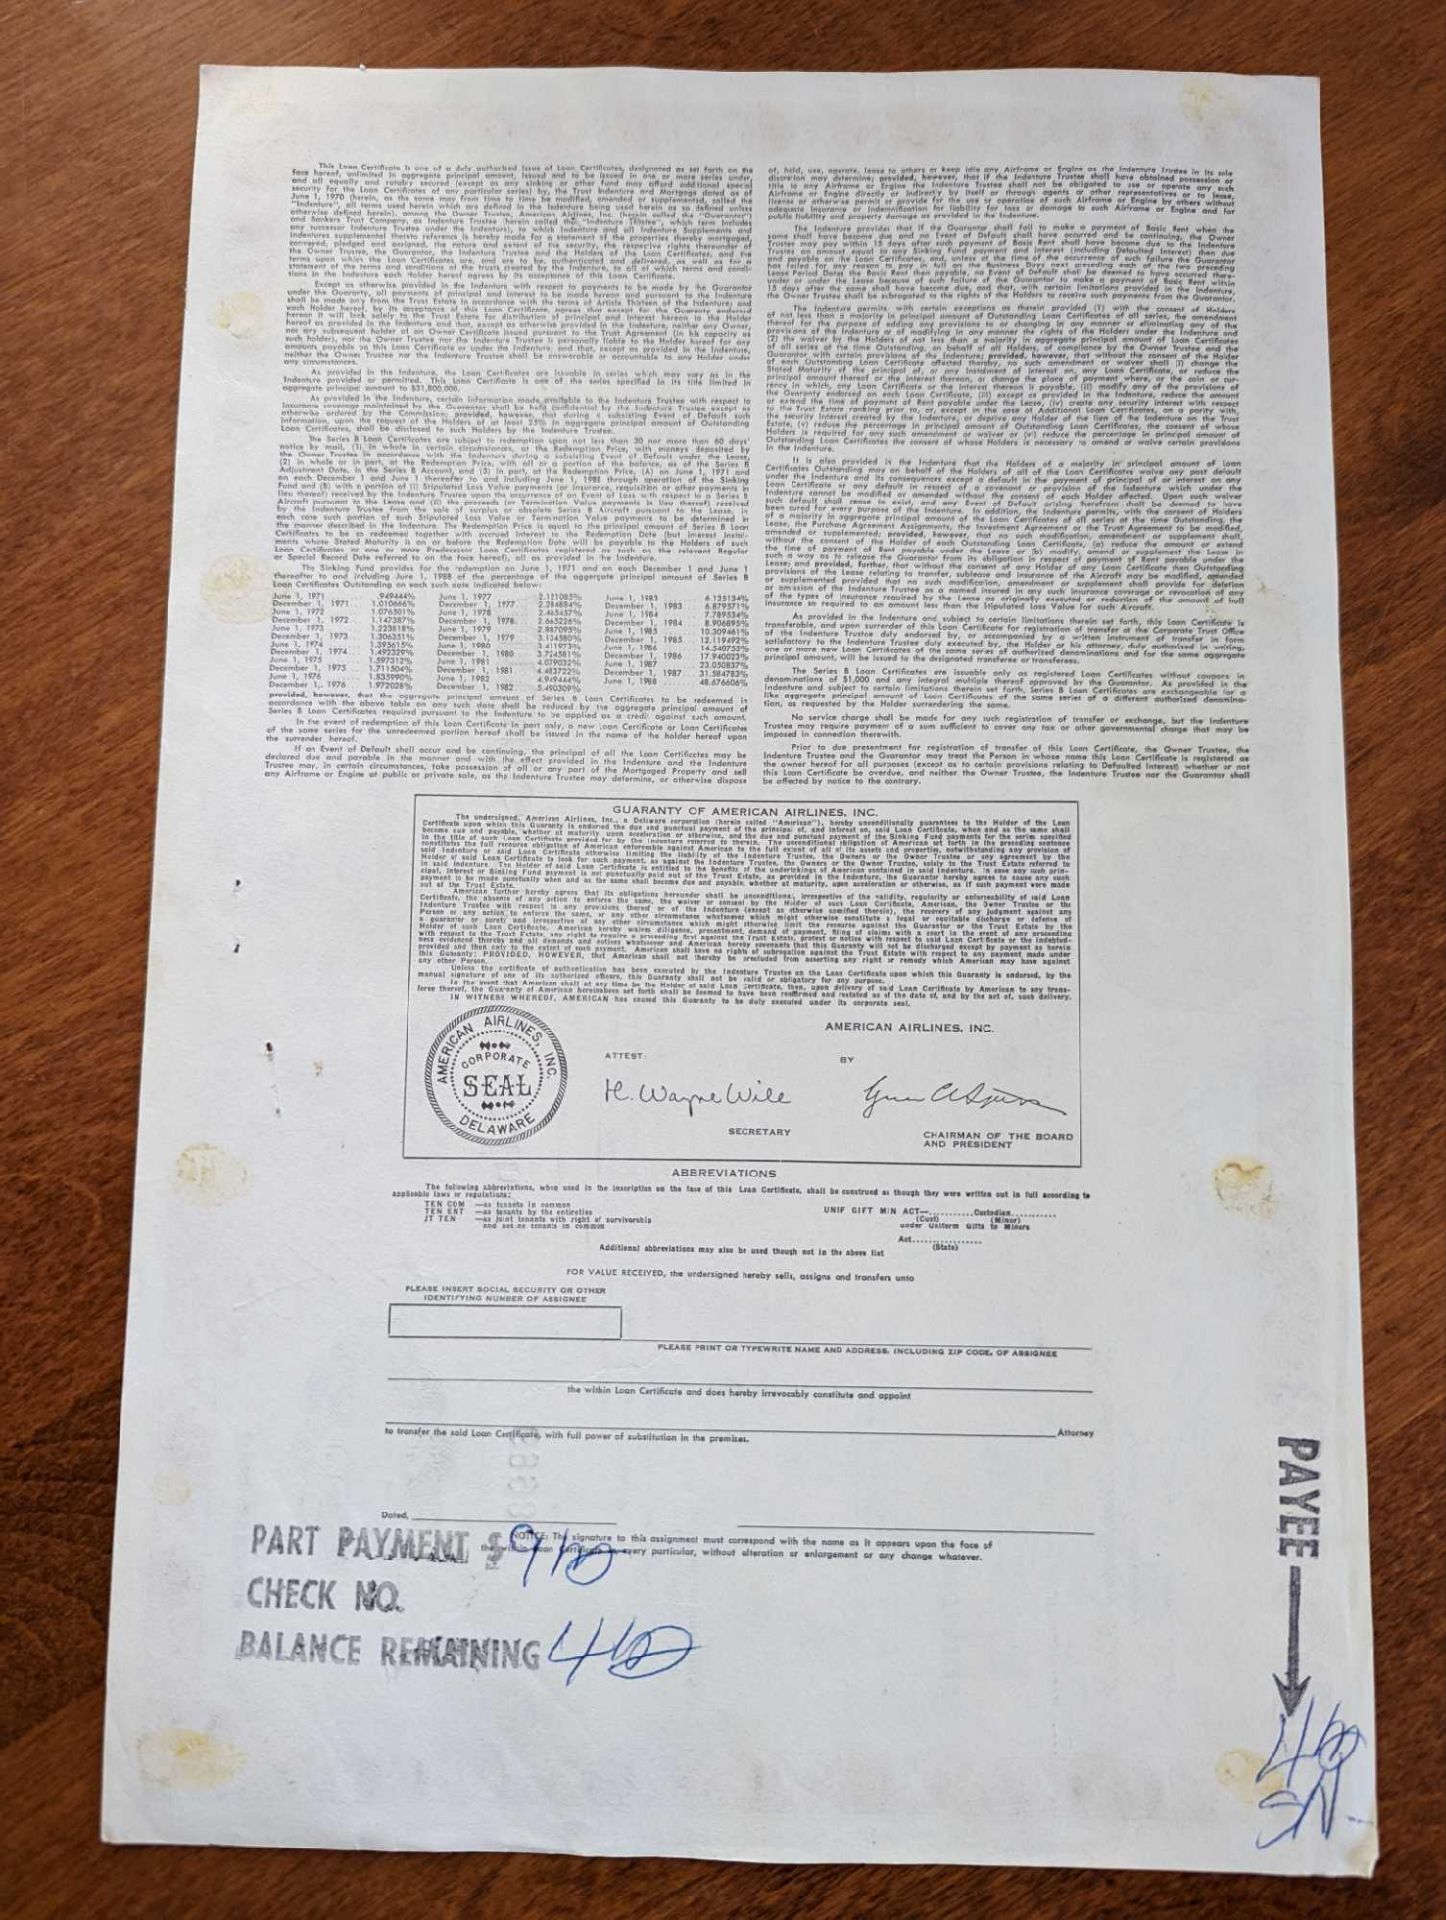 American Airlines, Inc. - Original Stock (Loan) Certificate - 1982 - Image 2 of 2